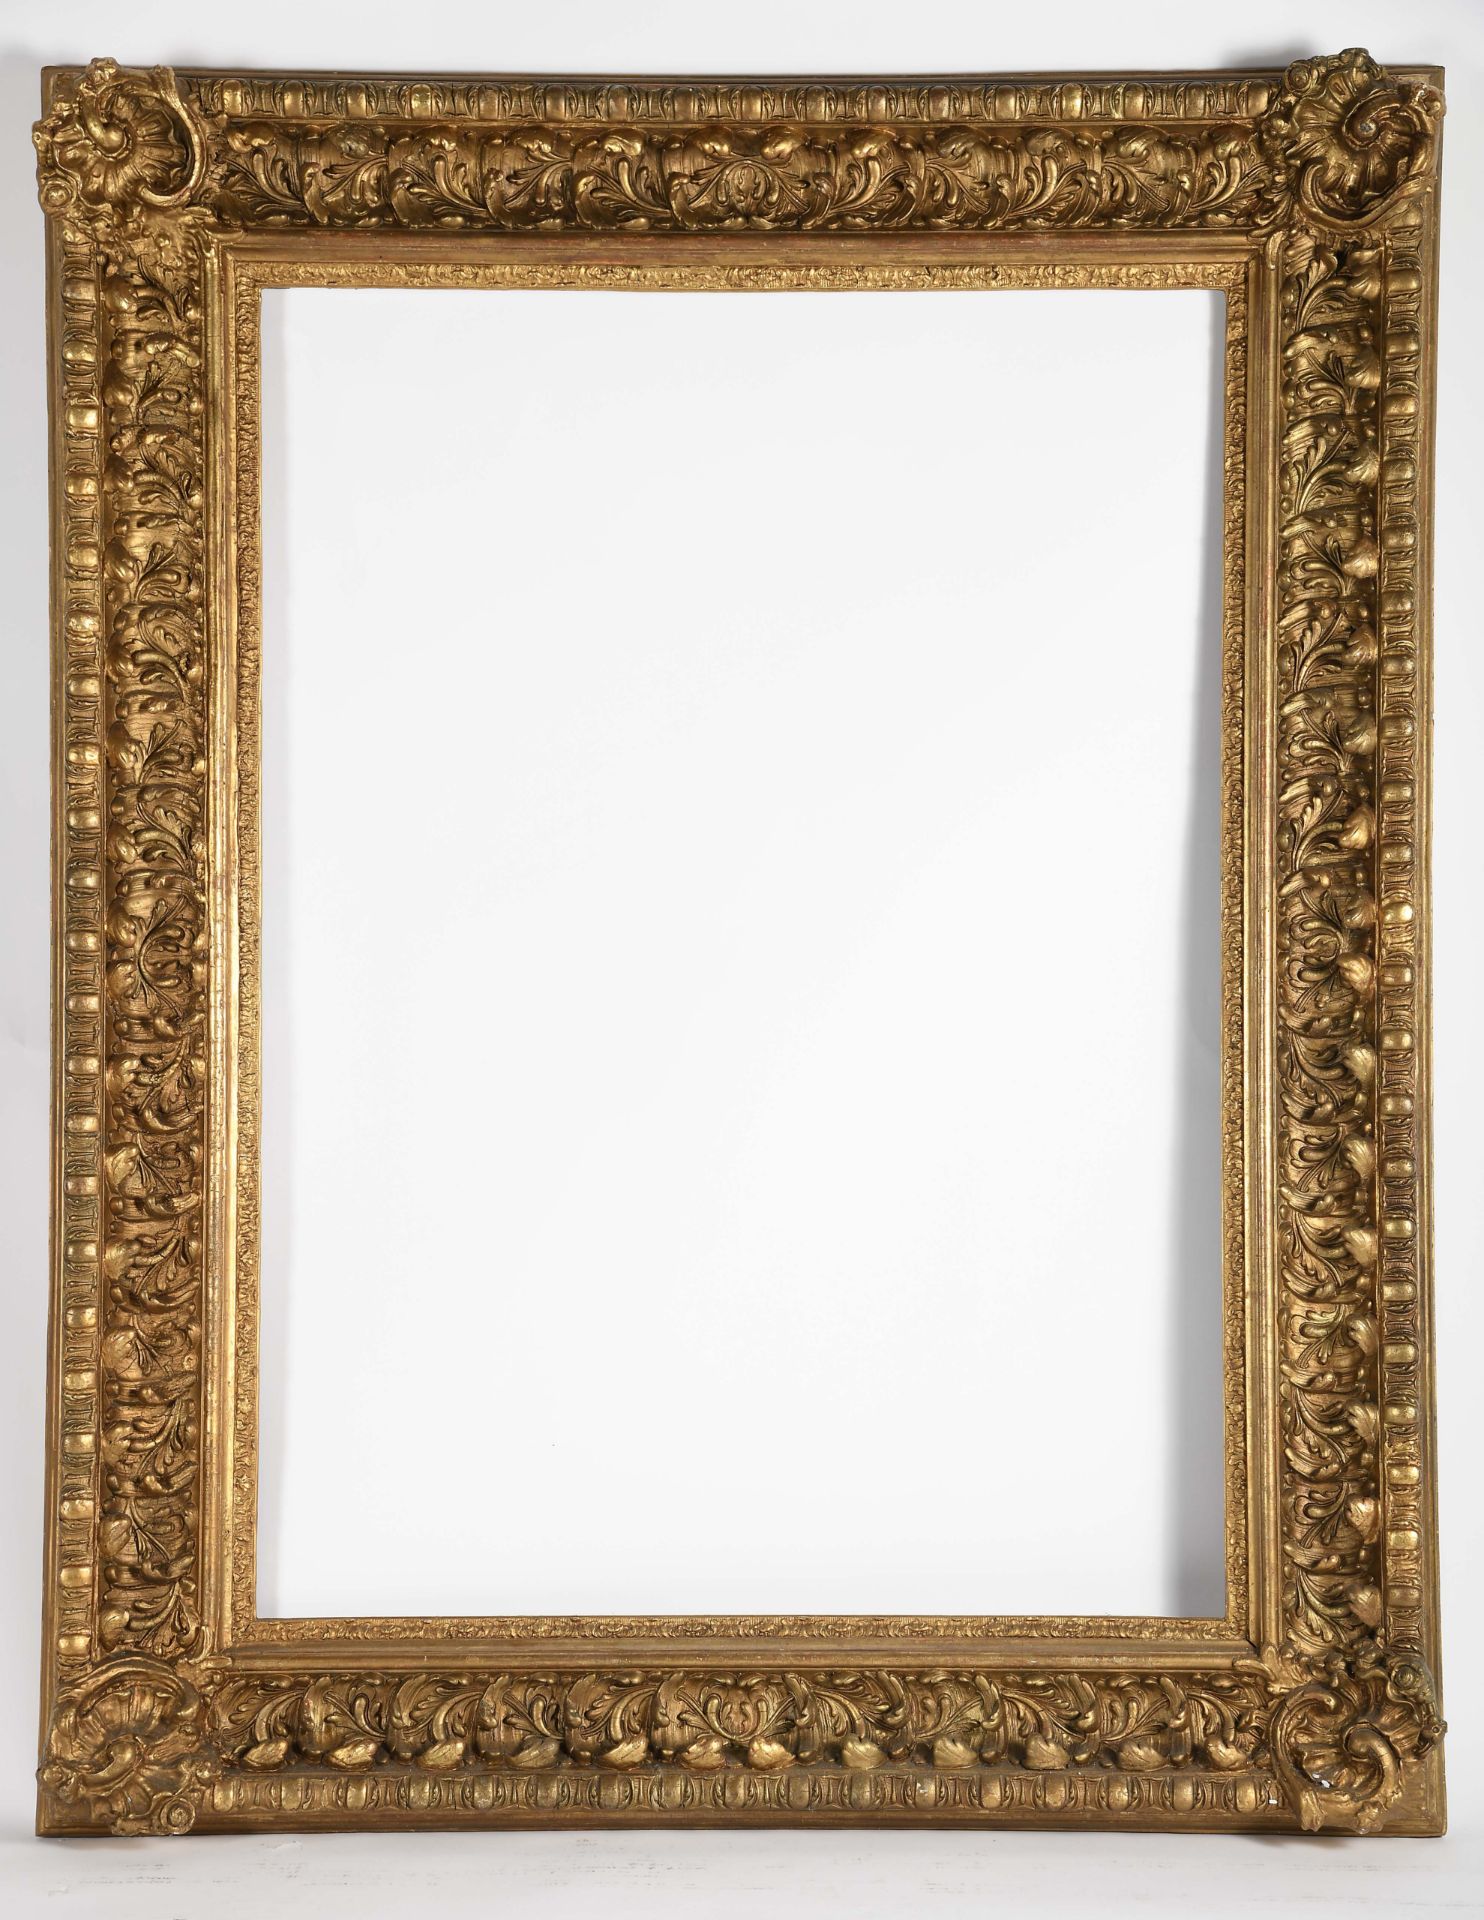 A frame